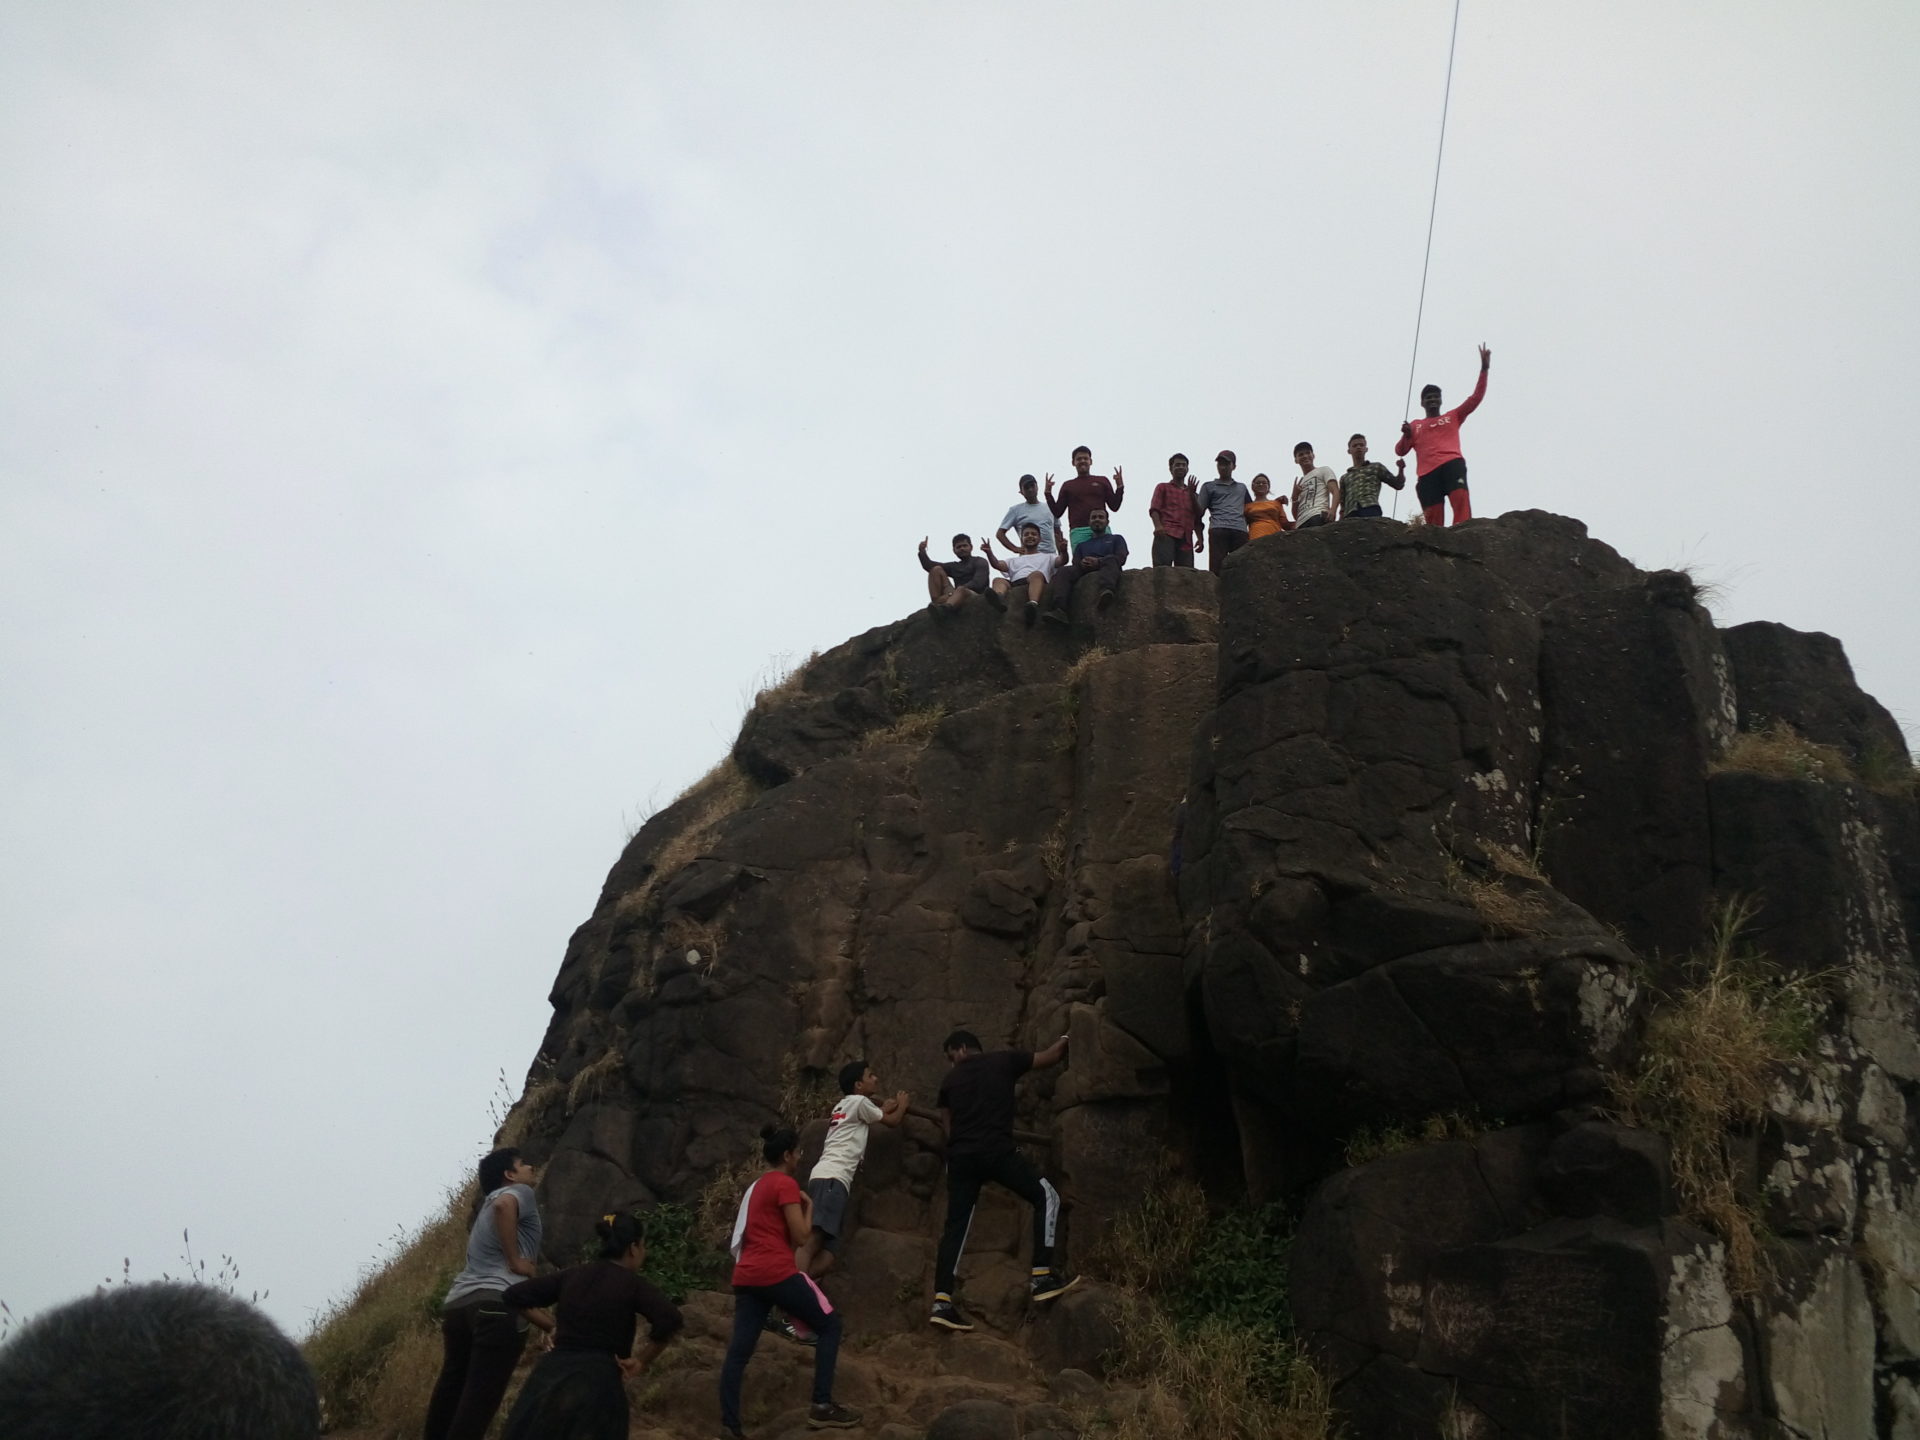 Kalavantin Durg Trek & Camping at Prabalmachi